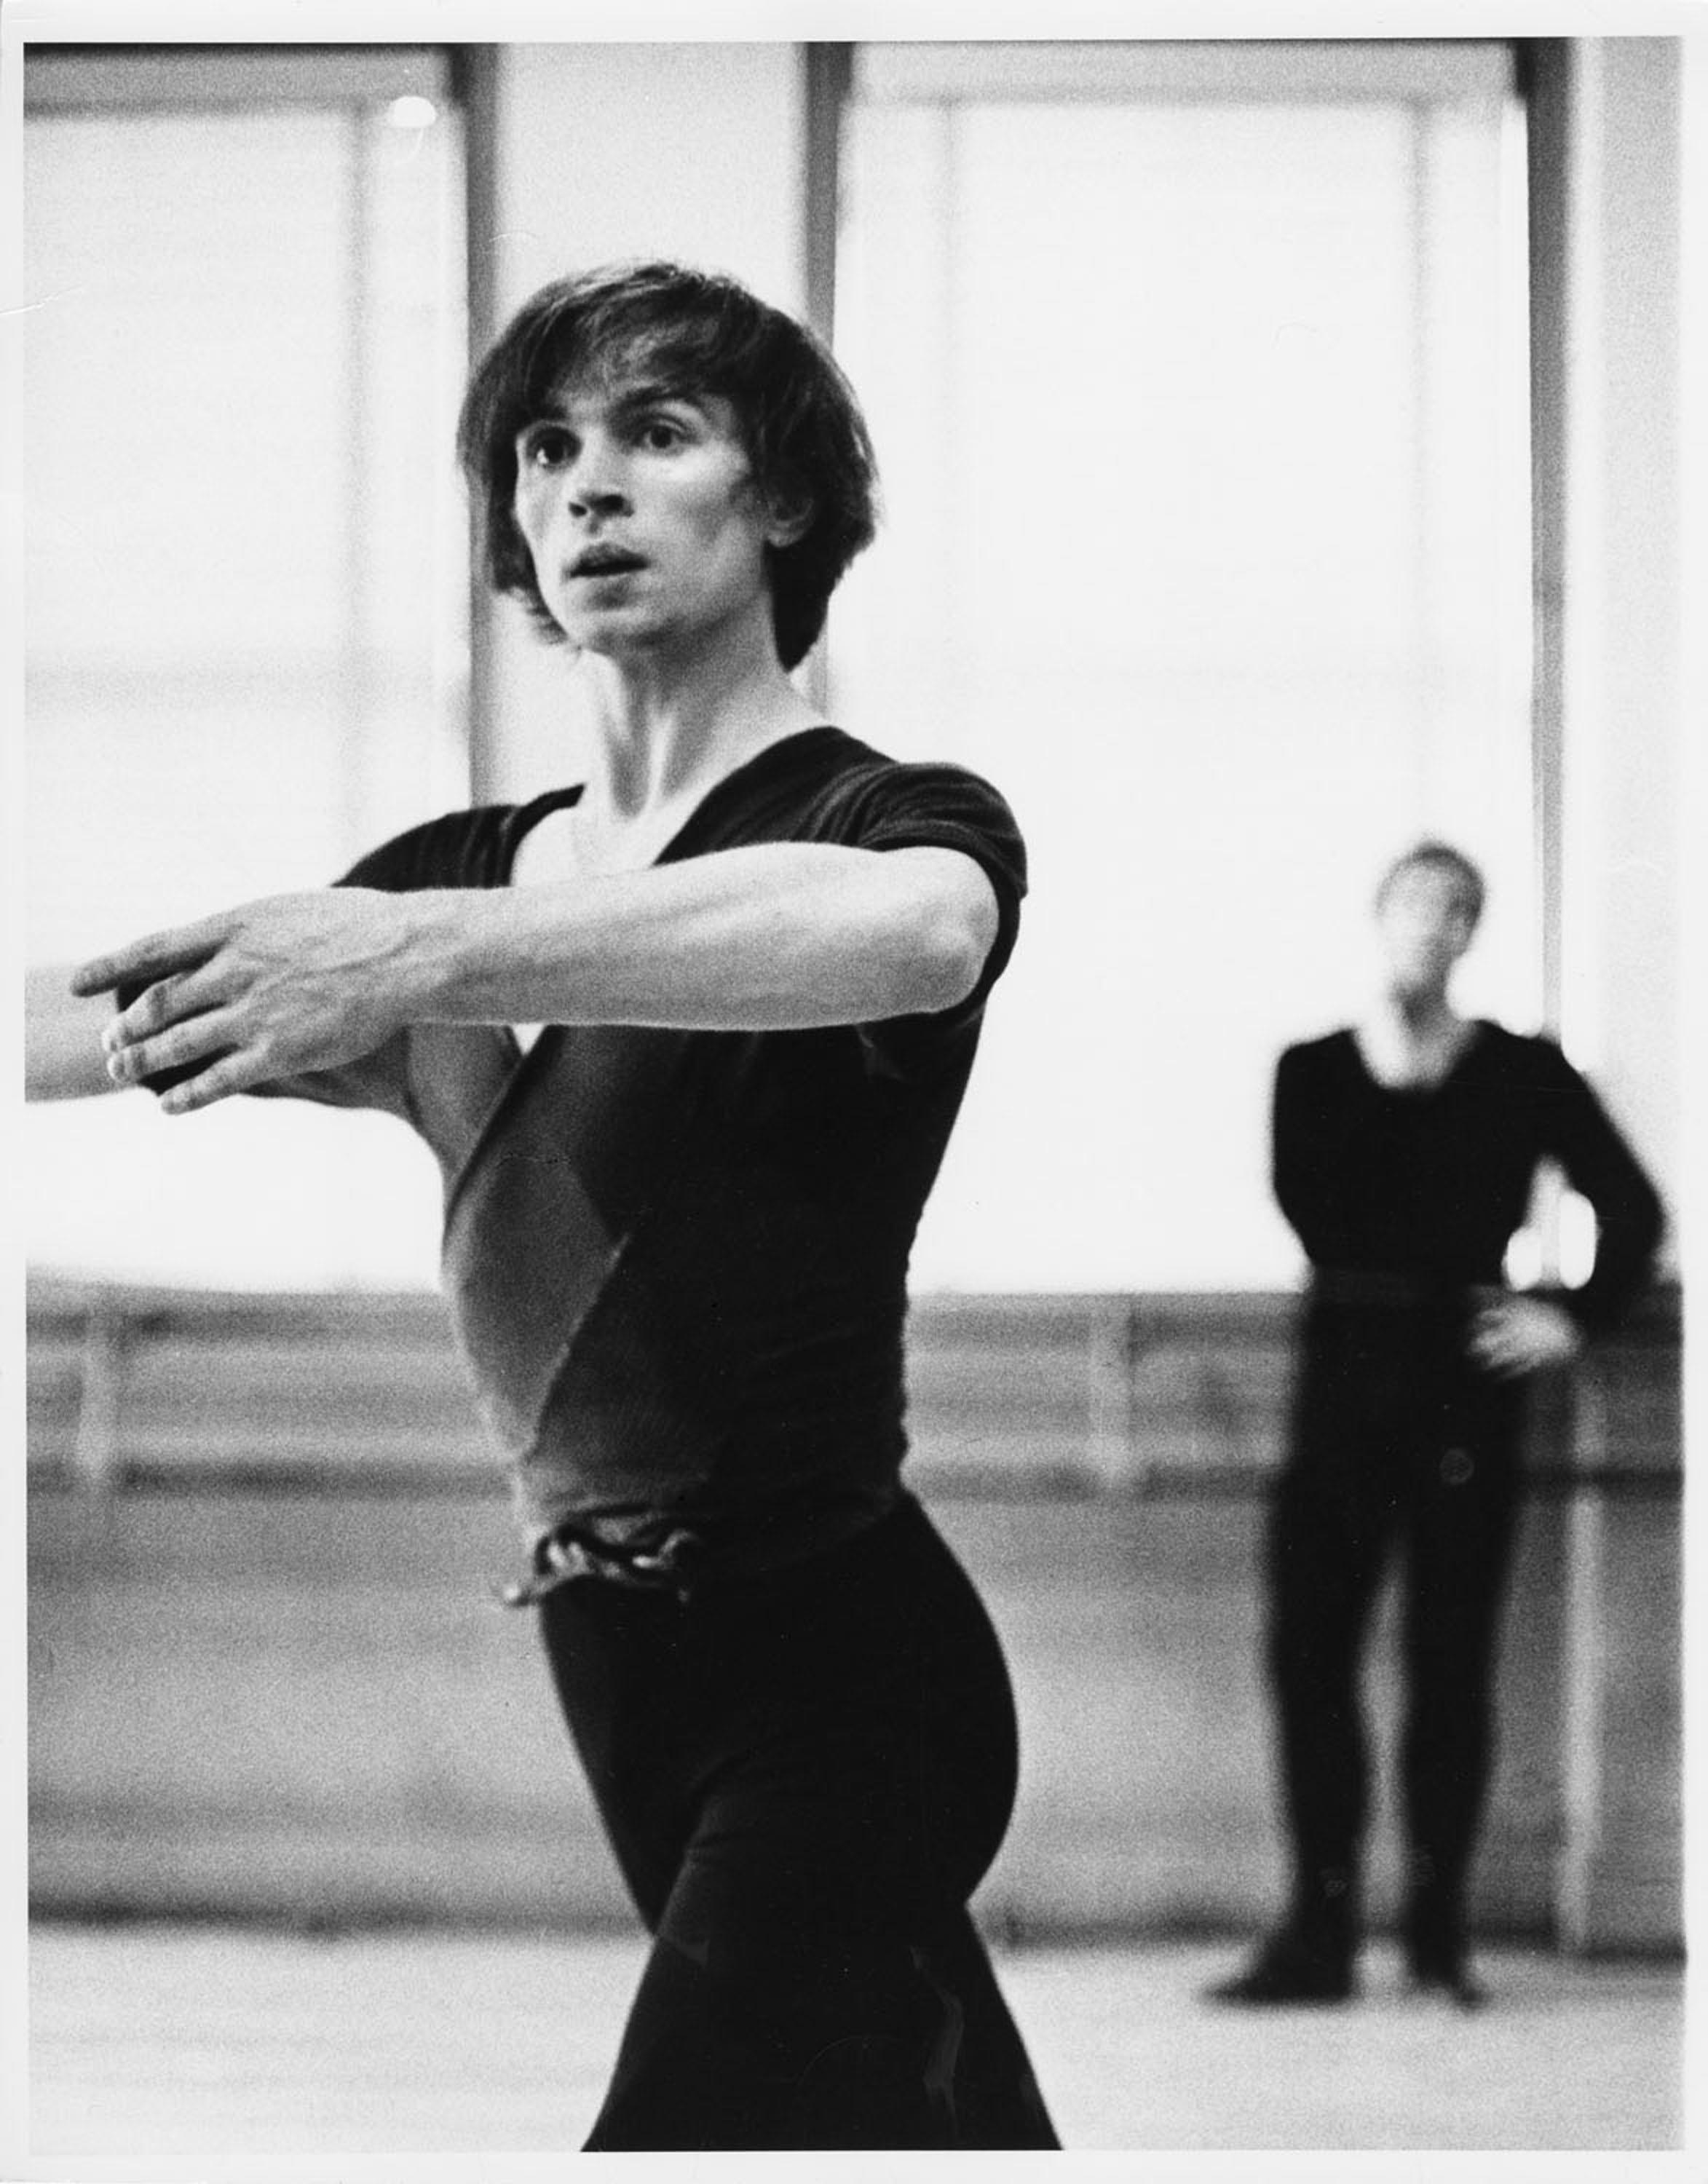 Black and White Photograph Jack Mitchell - Rudolf Nureyev dans un cours de danse, 20 janvier 1965.